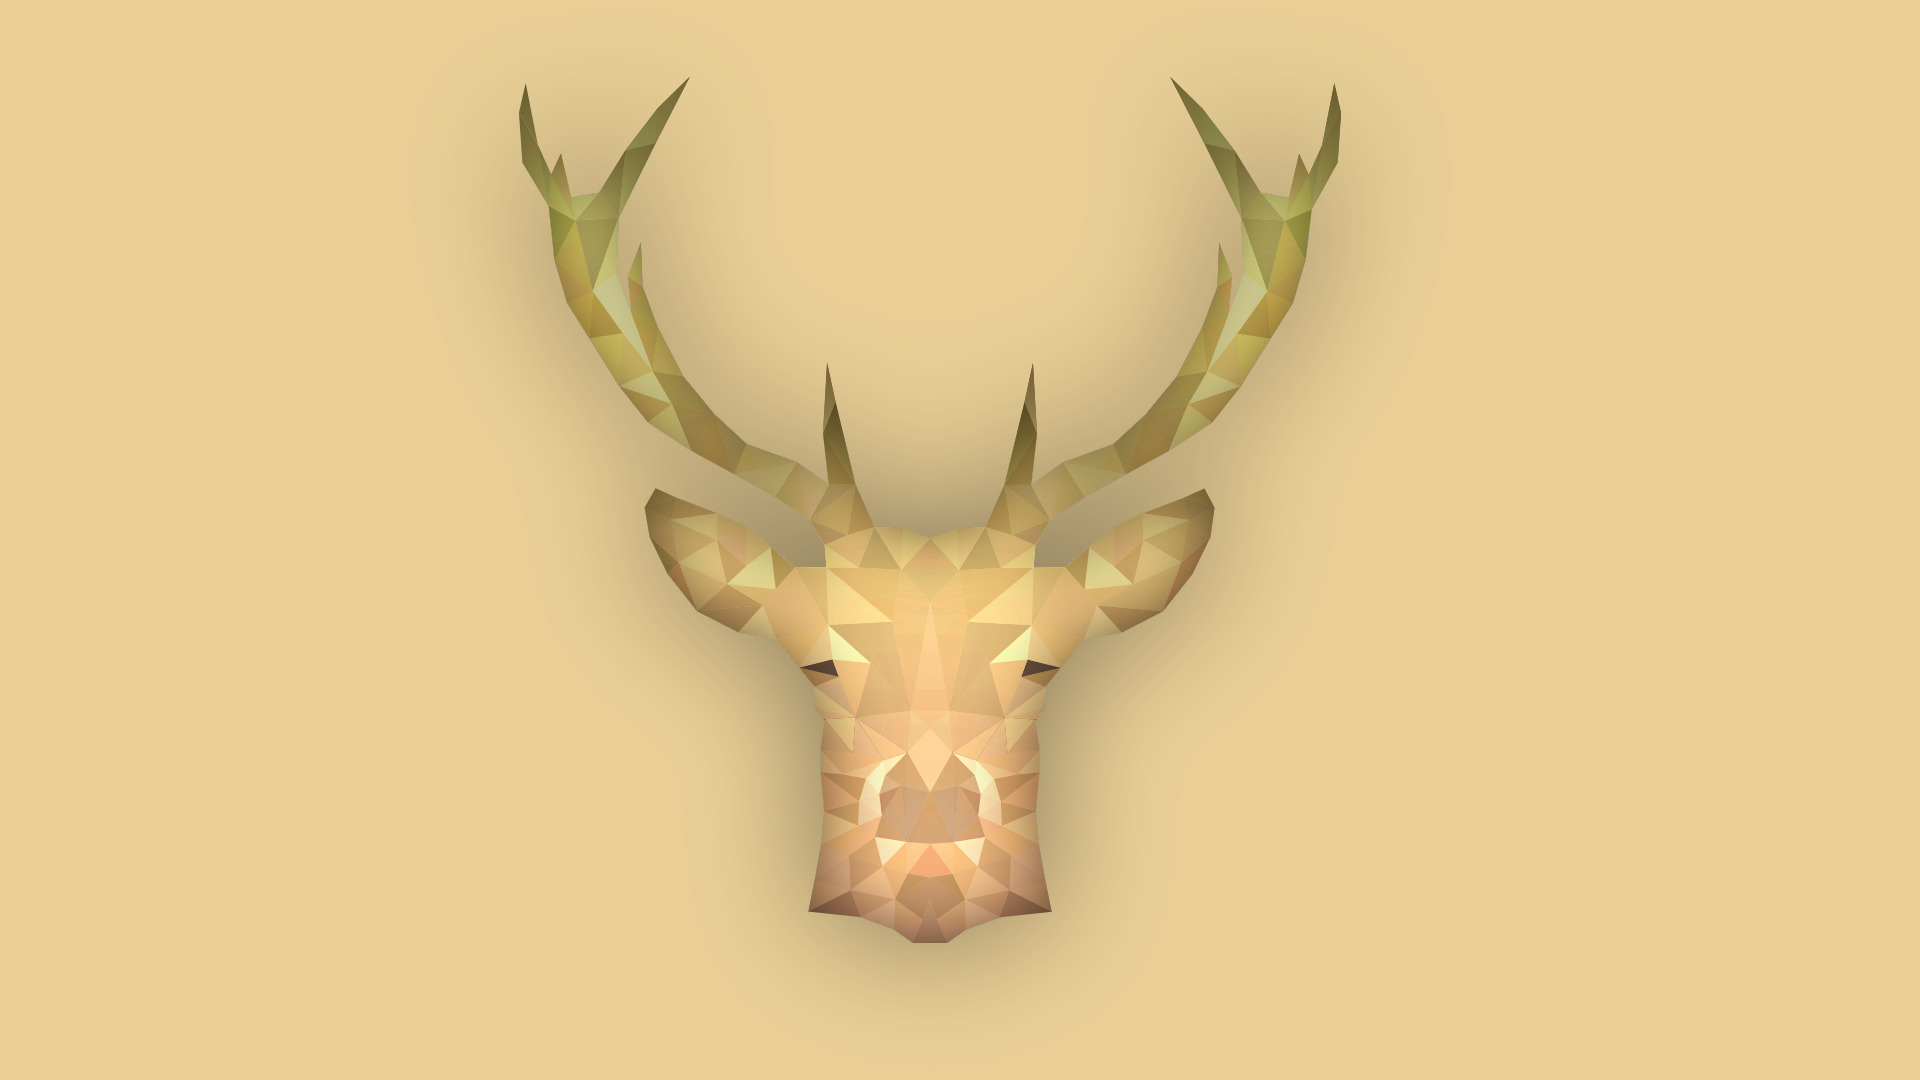 animals, Simple, Deer, Stags, Low Poly, Simple Background, Brown, Digital Art, Artwork Wallpaper